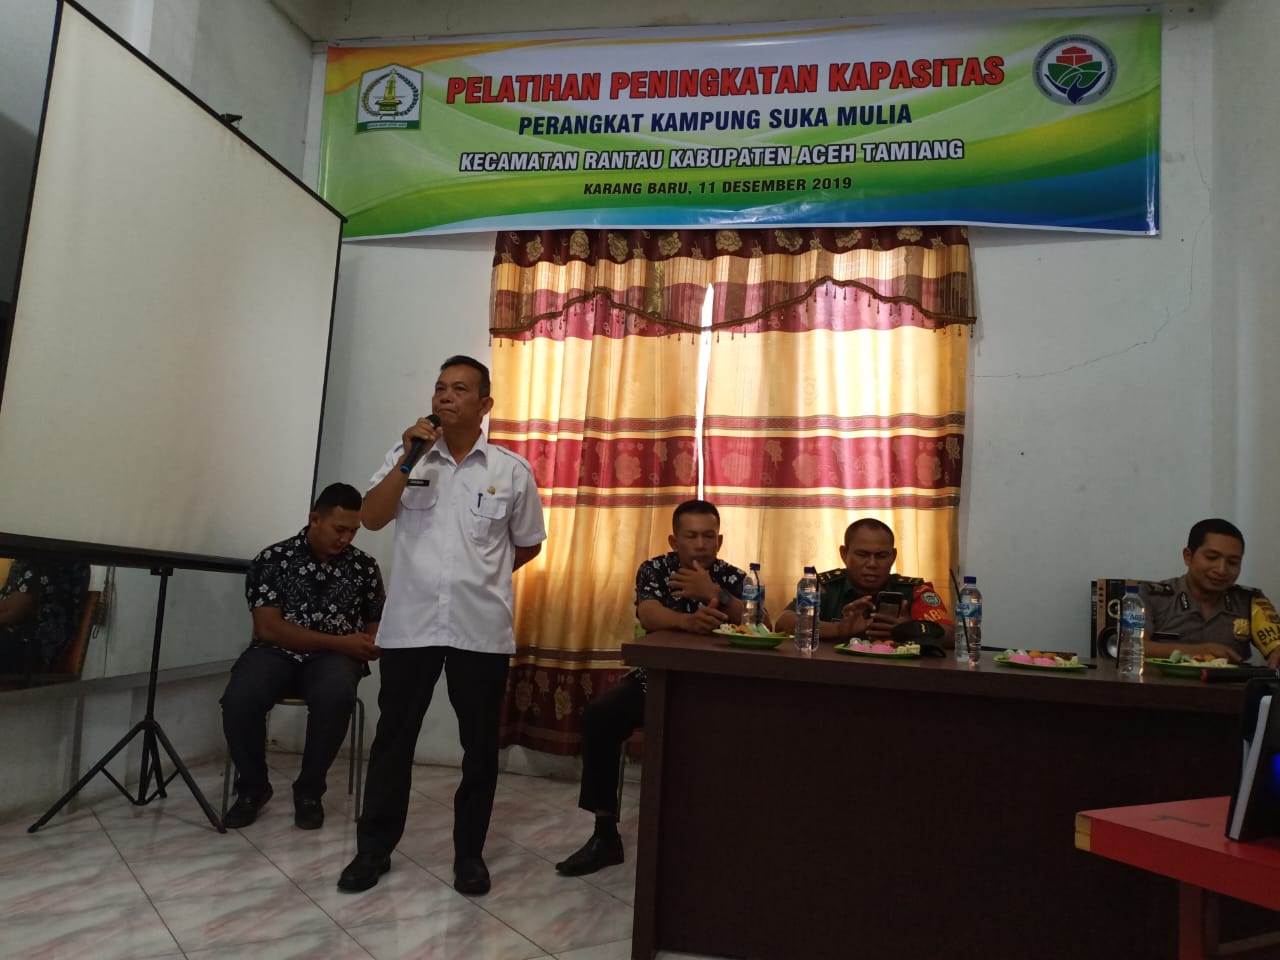 Pelatihan Peningkatan Kapasitas Perangkat Kampung Suka Mulia Kecamatan Rantau